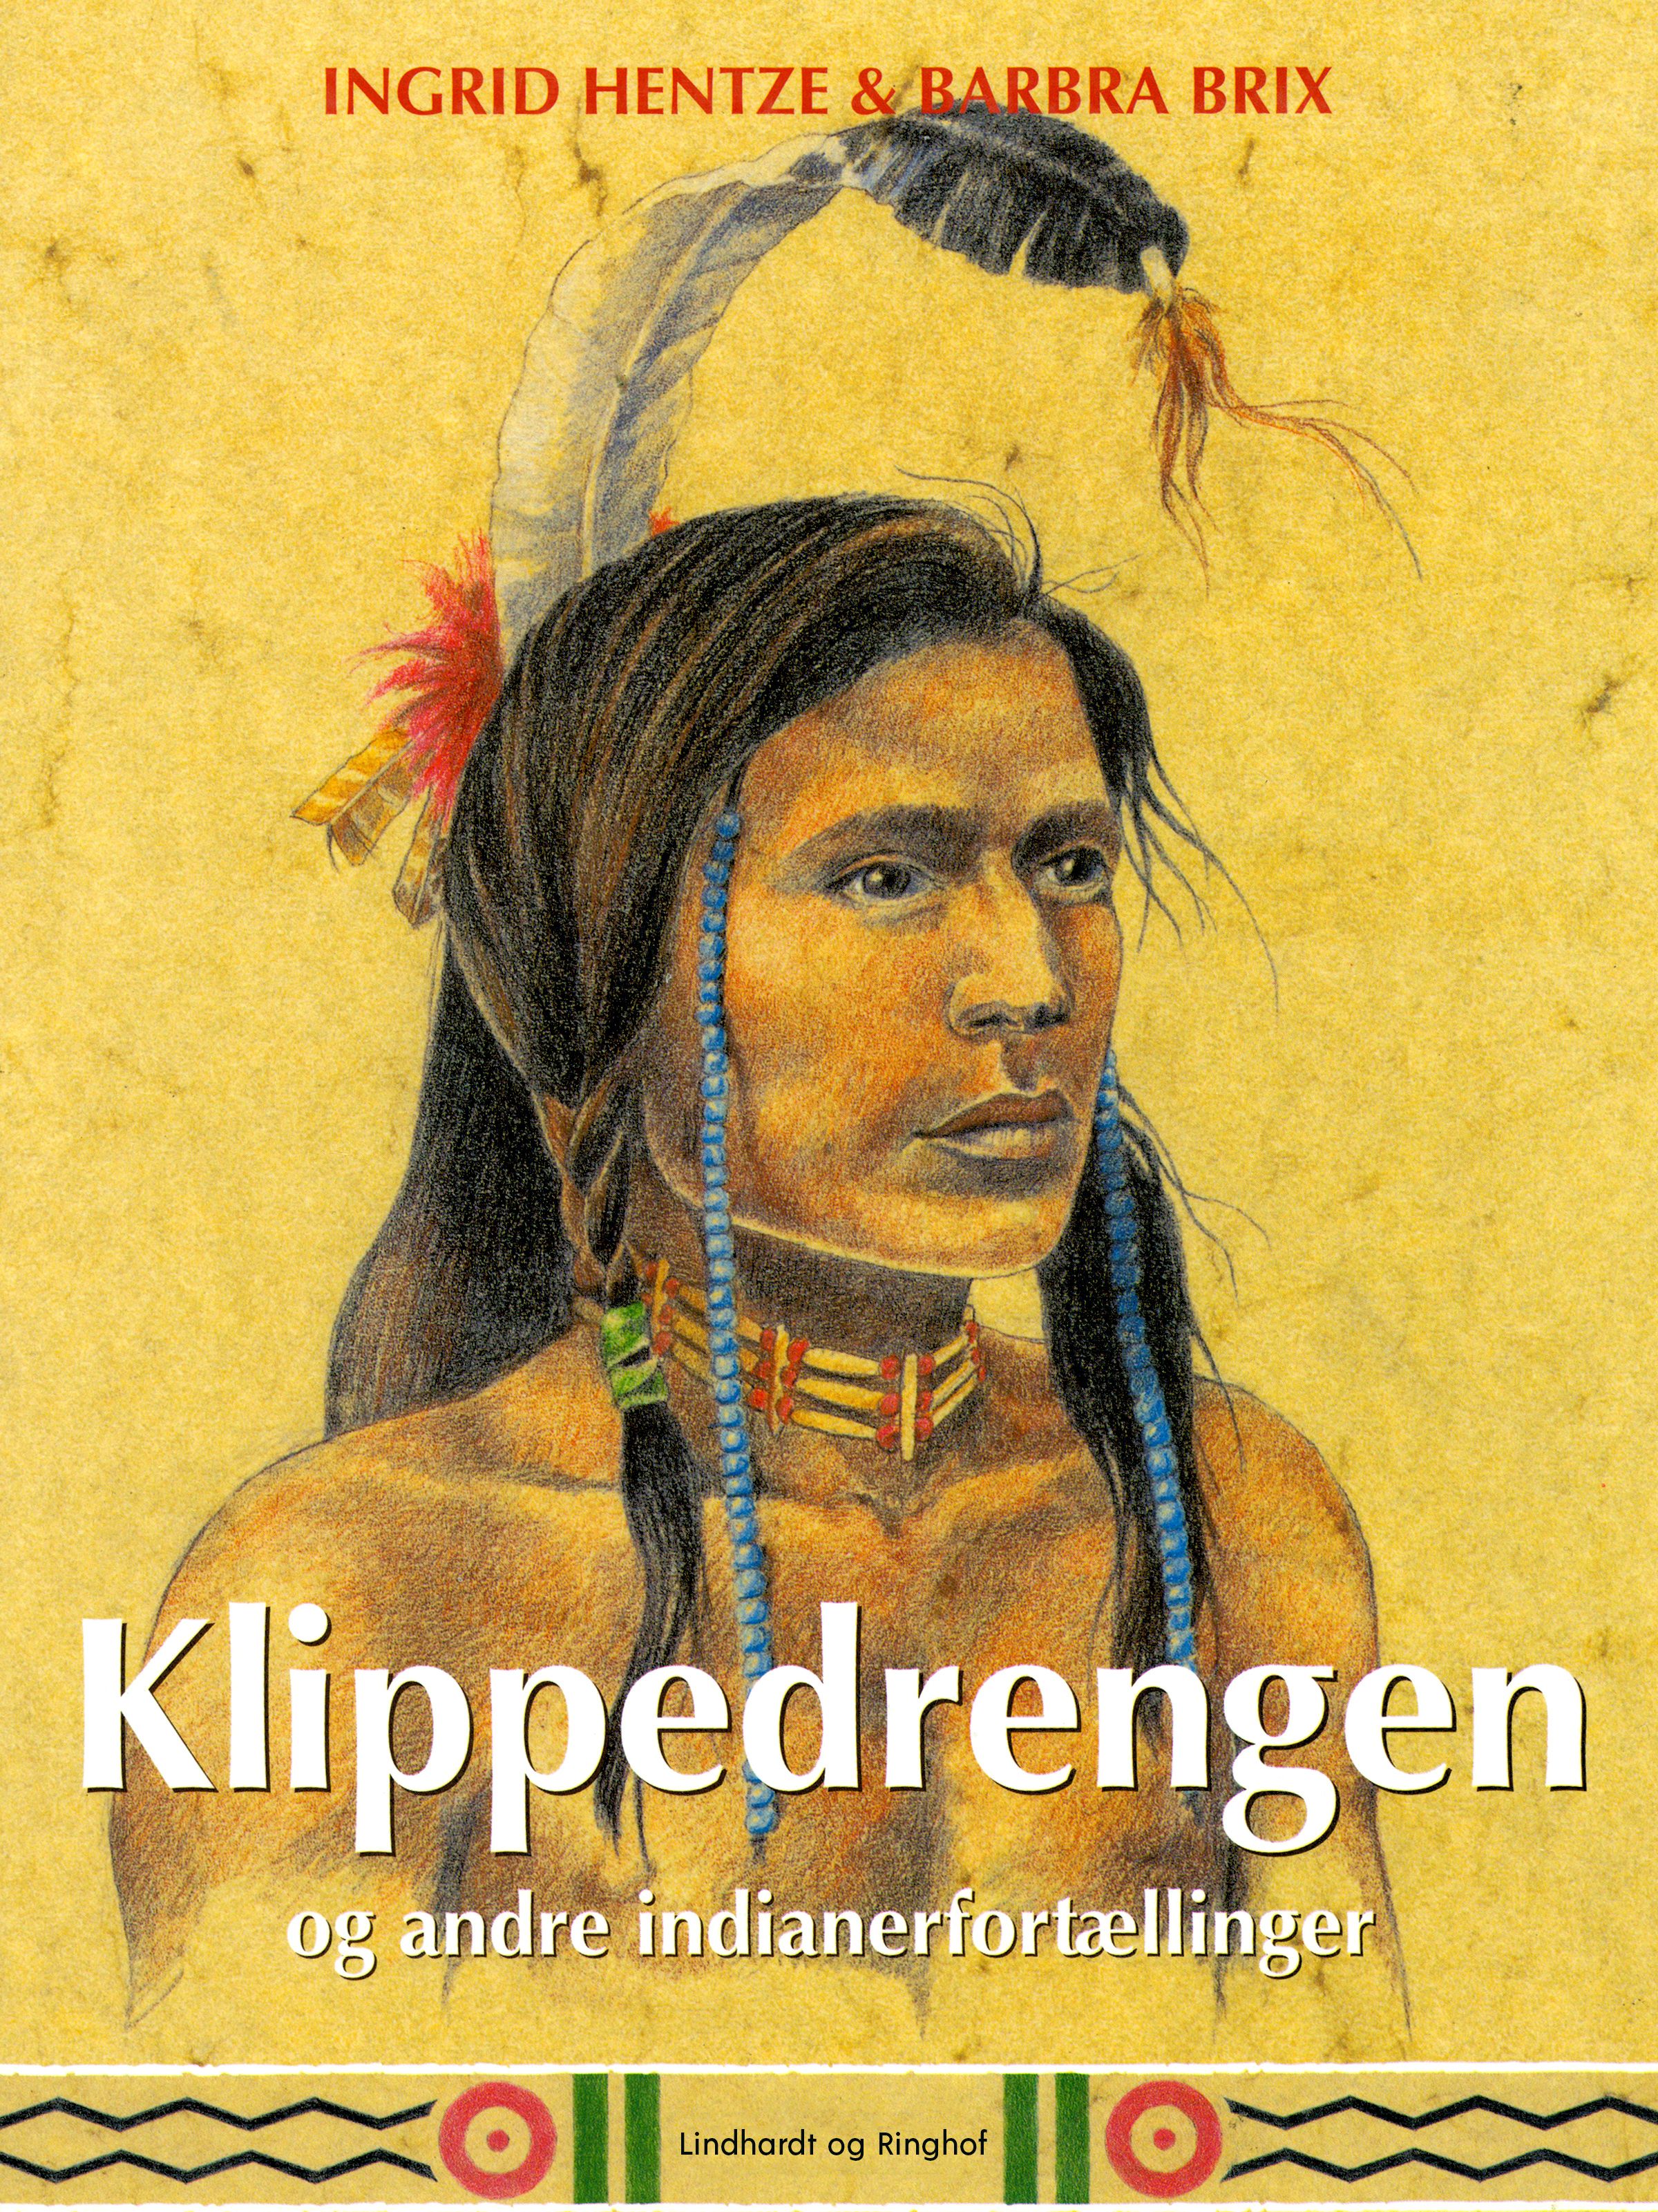 Klippedrengen og andre indianerfortællinger, e-bog af Ingrid Hentze